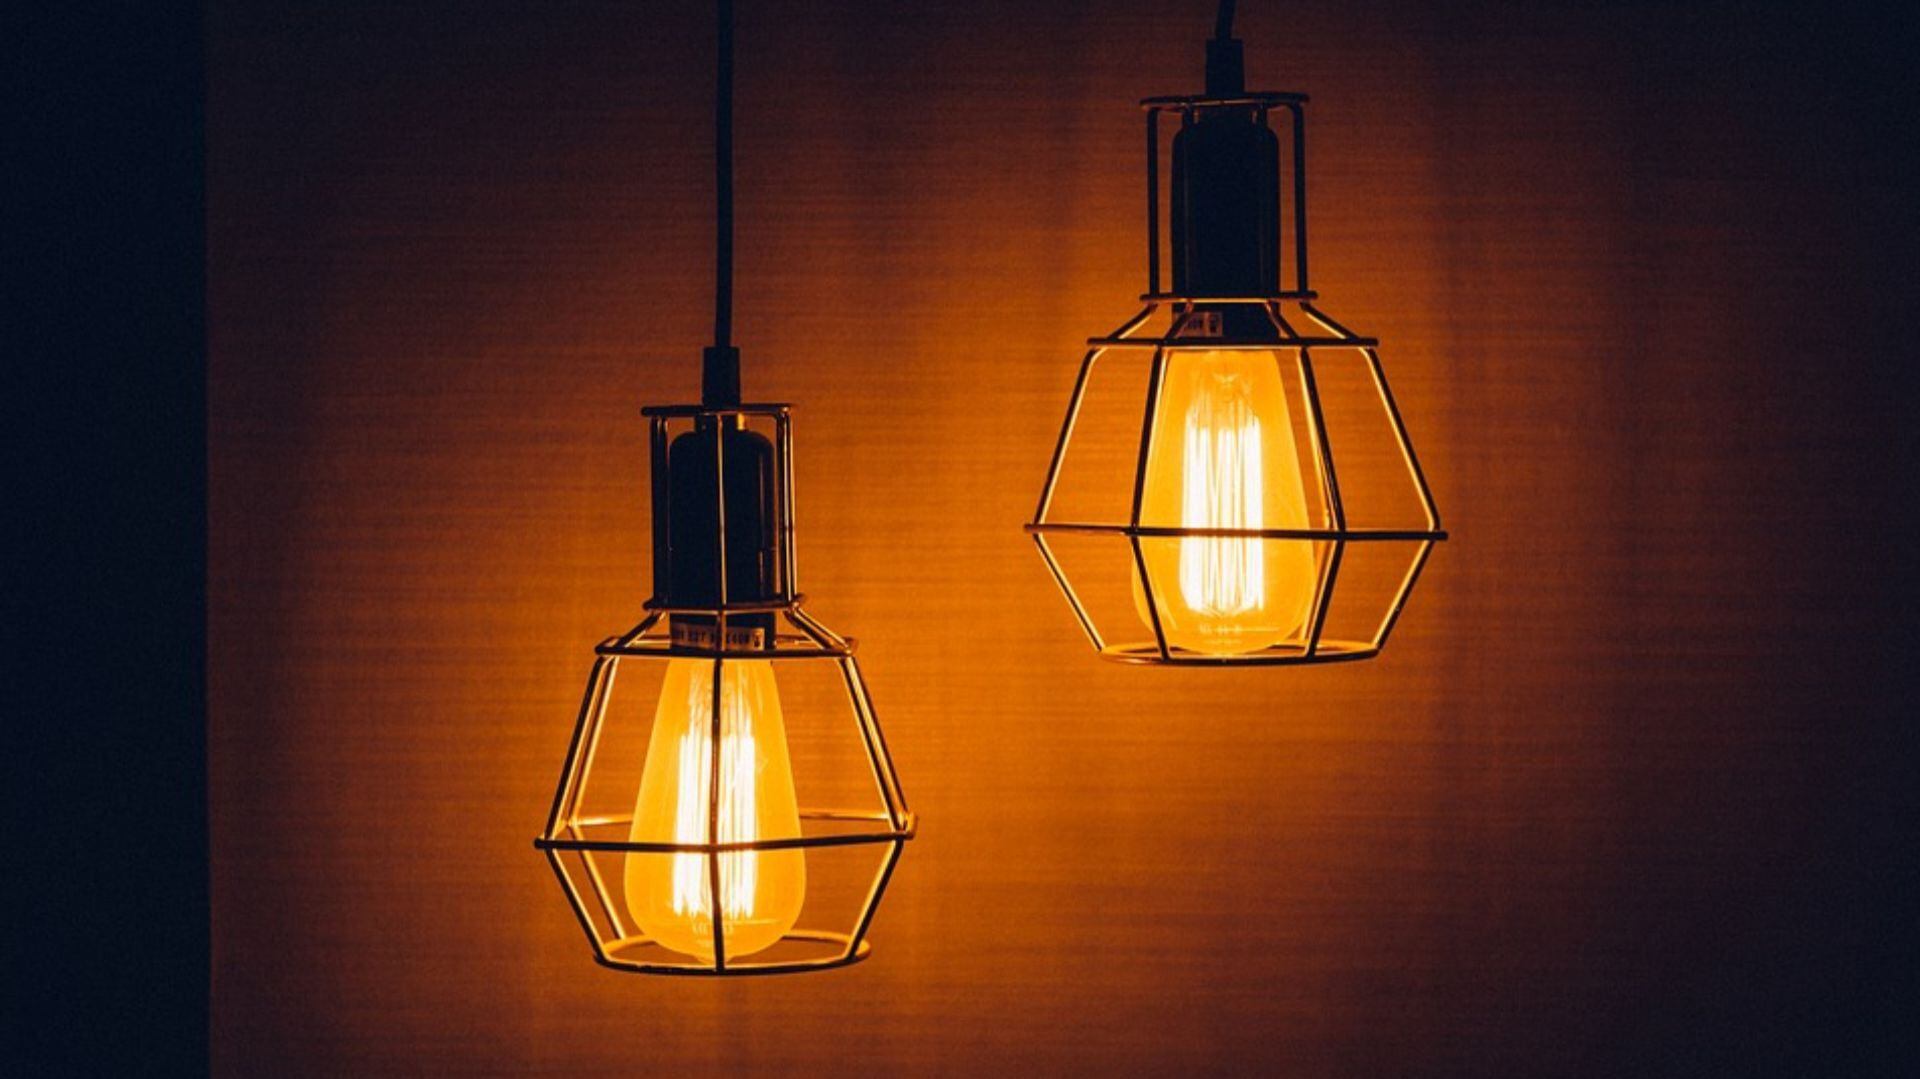 Si quieres ahorrar luz lo más recomendable es utilizar focos LED en lugar de los convencionales. (Pixabay)